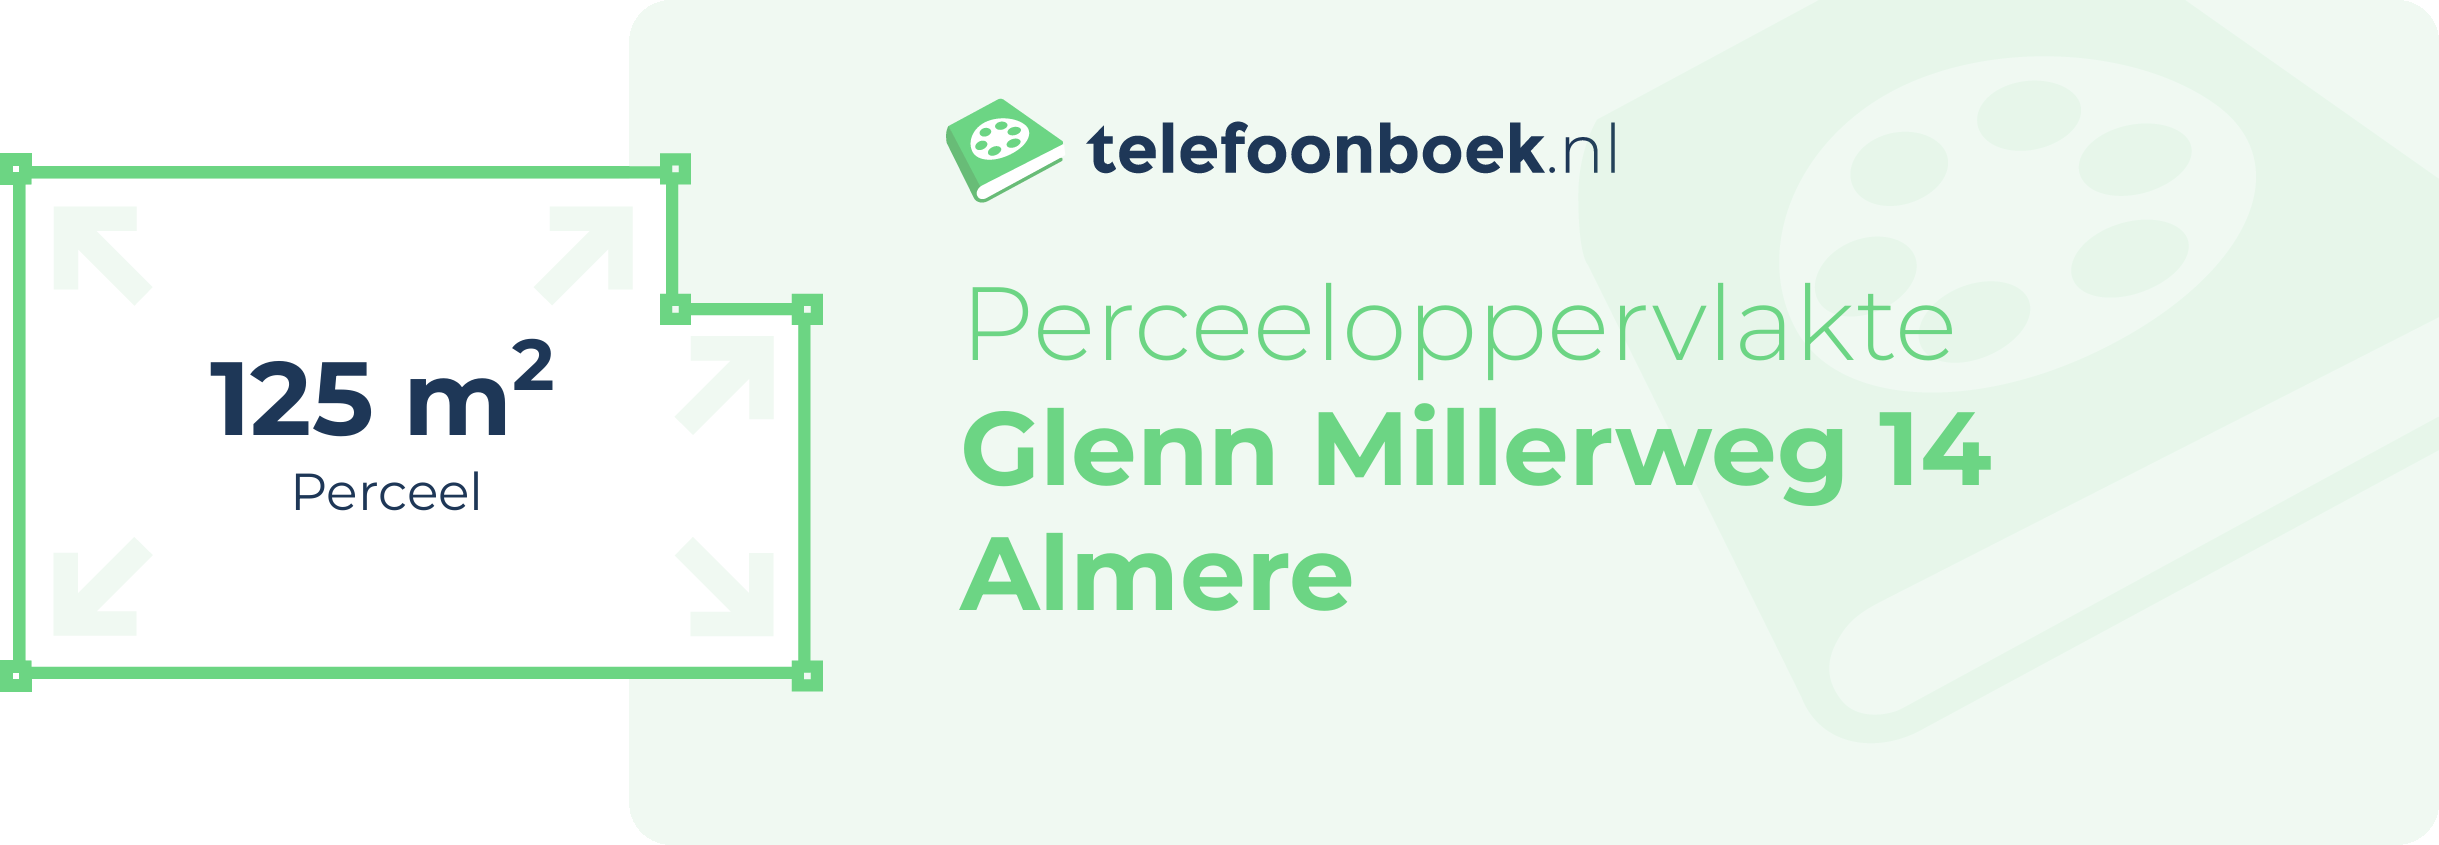 Perceeloppervlakte Glenn Millerweg 14 Almere